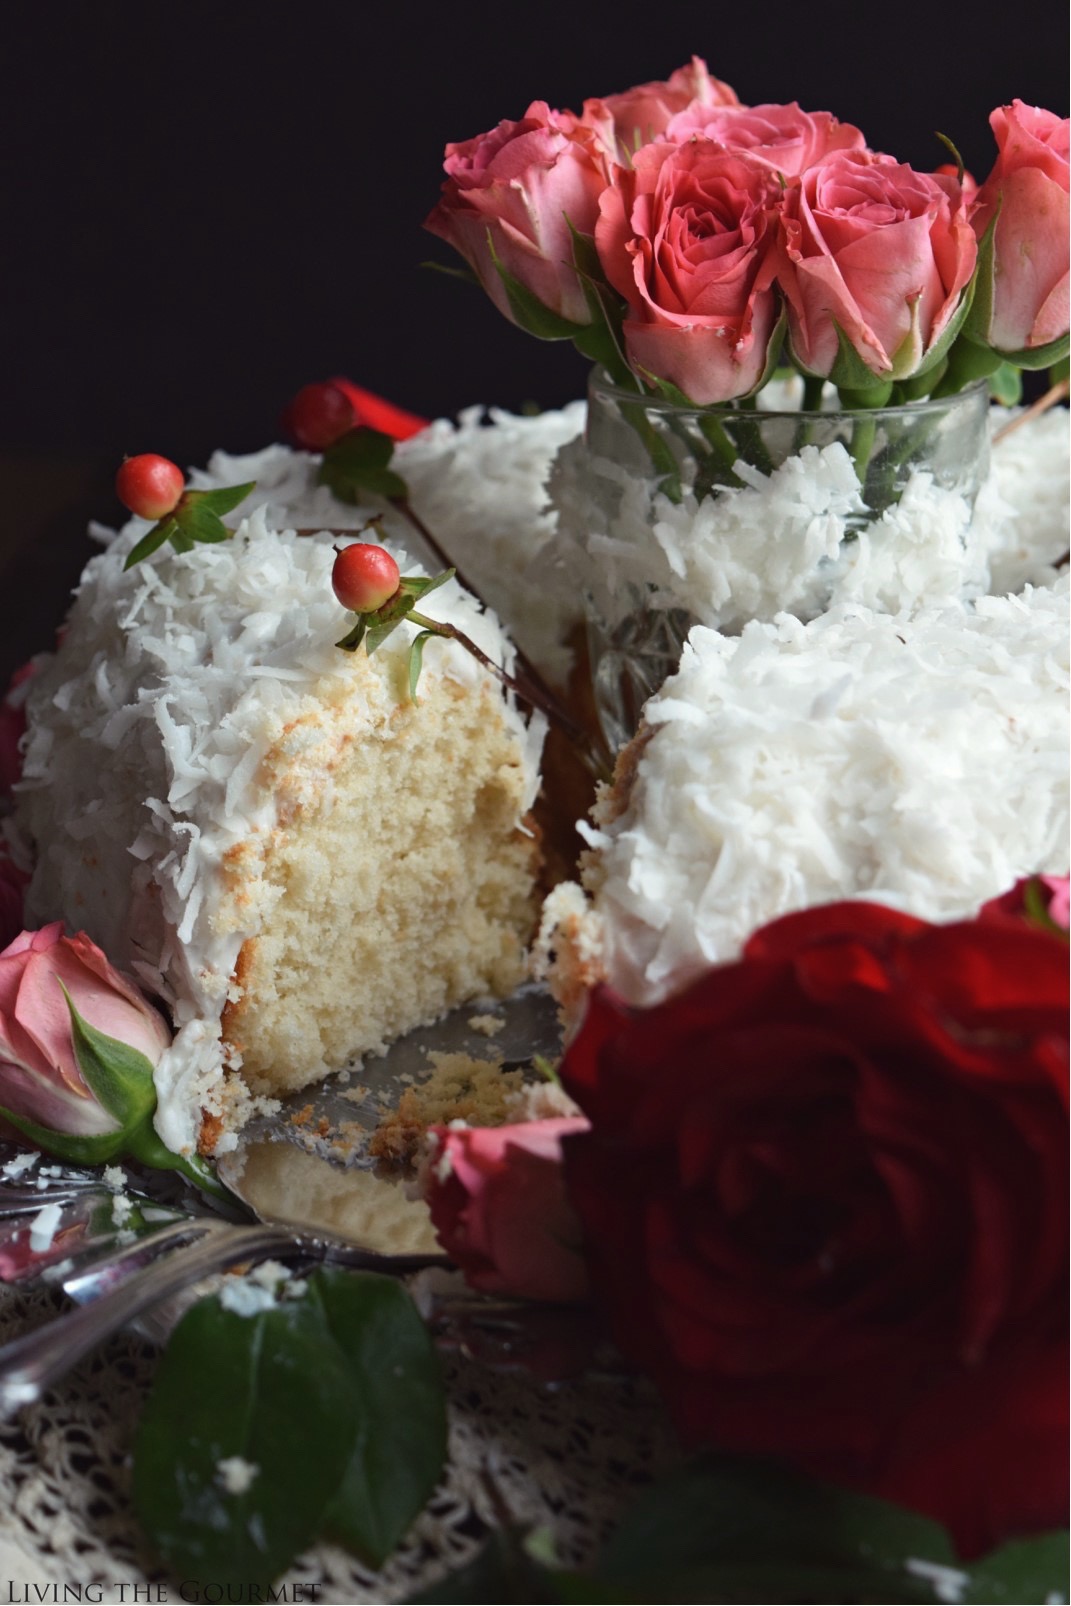 Living the Gourmet: Christmas Rose Bundt Cake | #BundtBakers